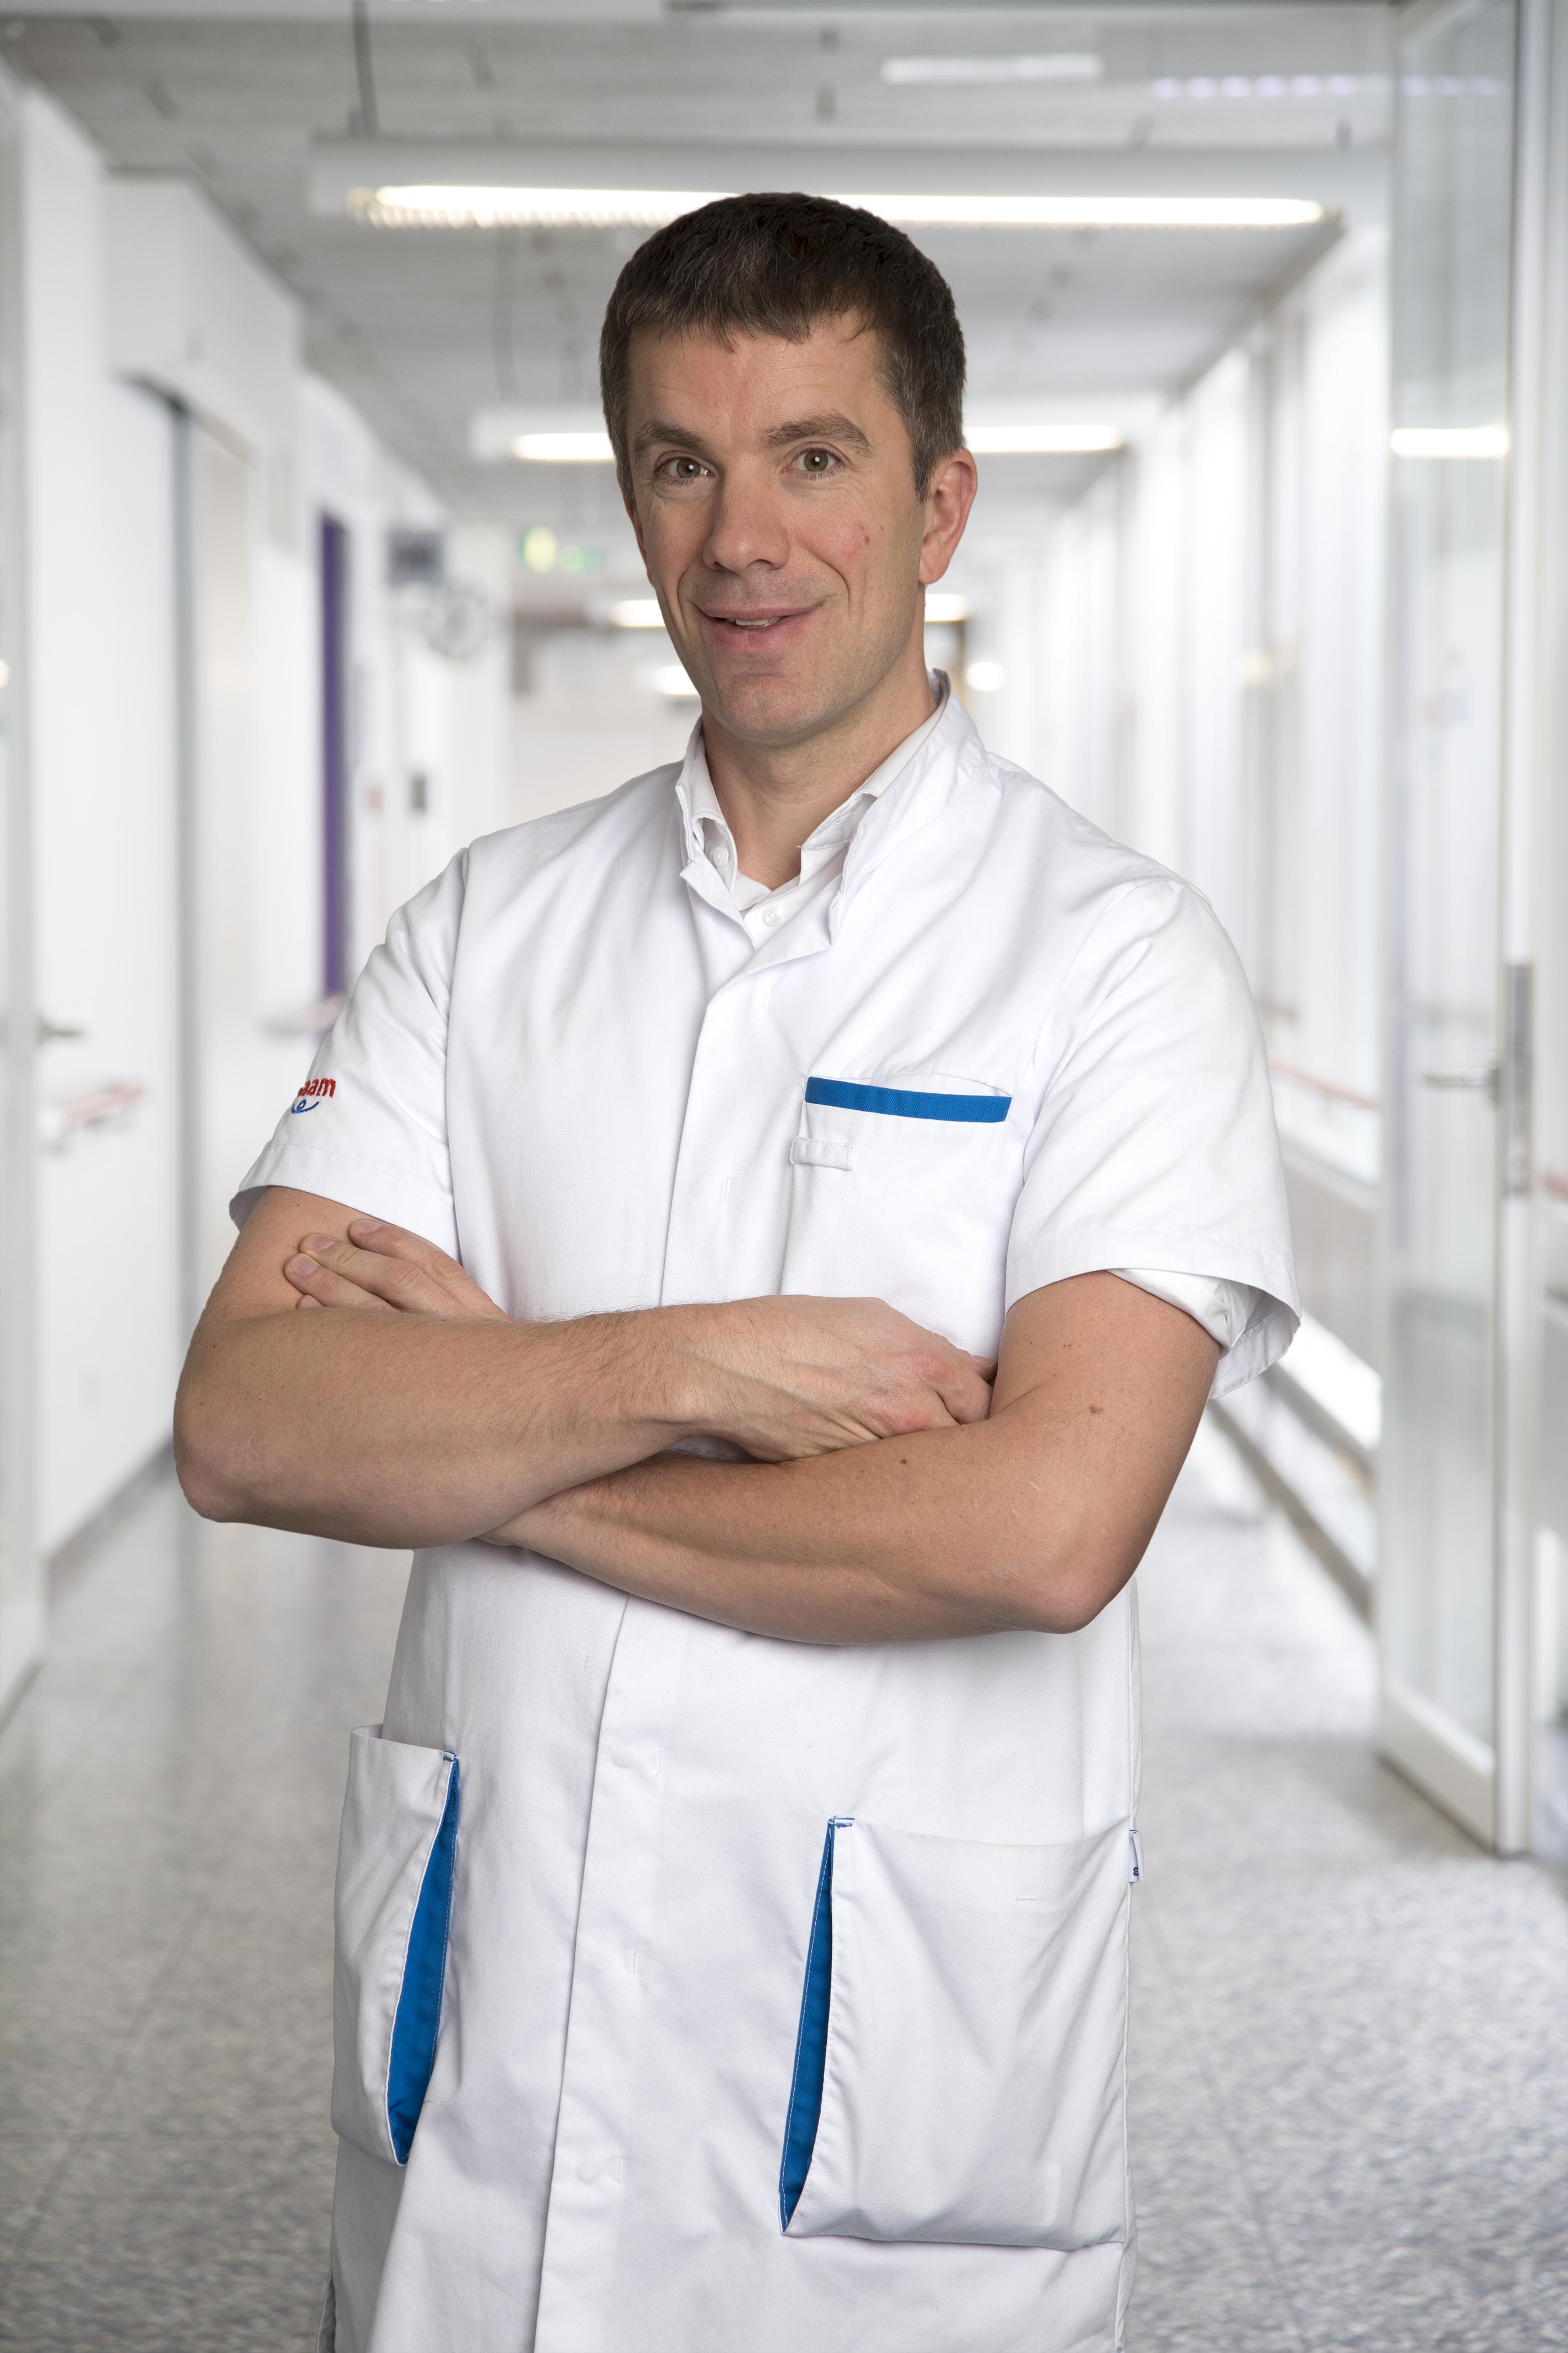 Dokter Proot is neuroloog bij de groepspraktijk De Rotonde en academisch consultant voor het Universitair Ziekenhuis Gent.